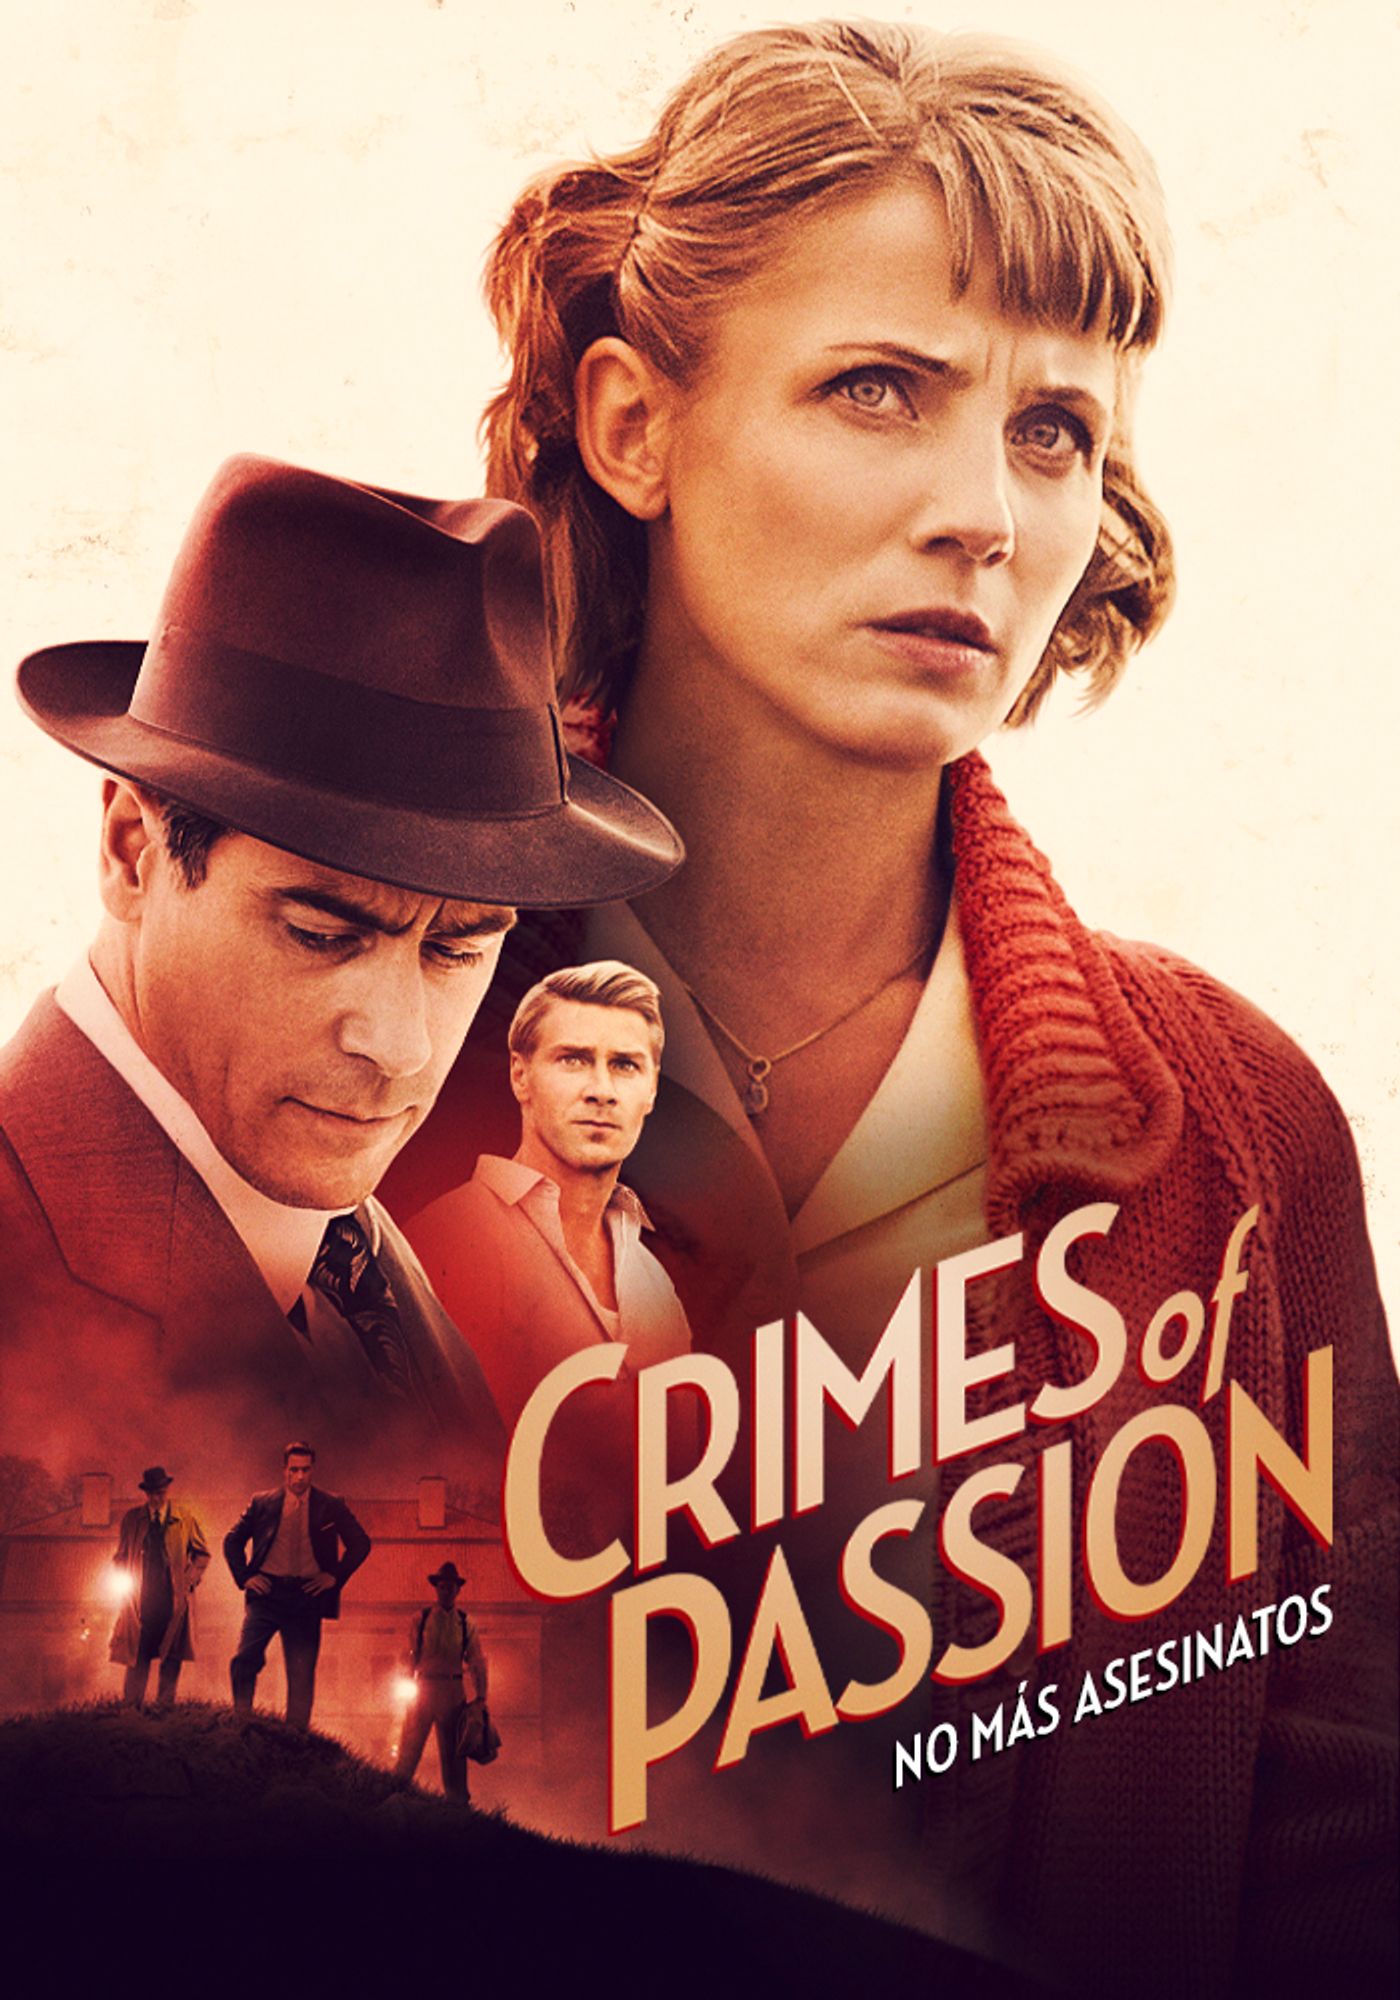 Crimes of Passion 3: No más asesinatos